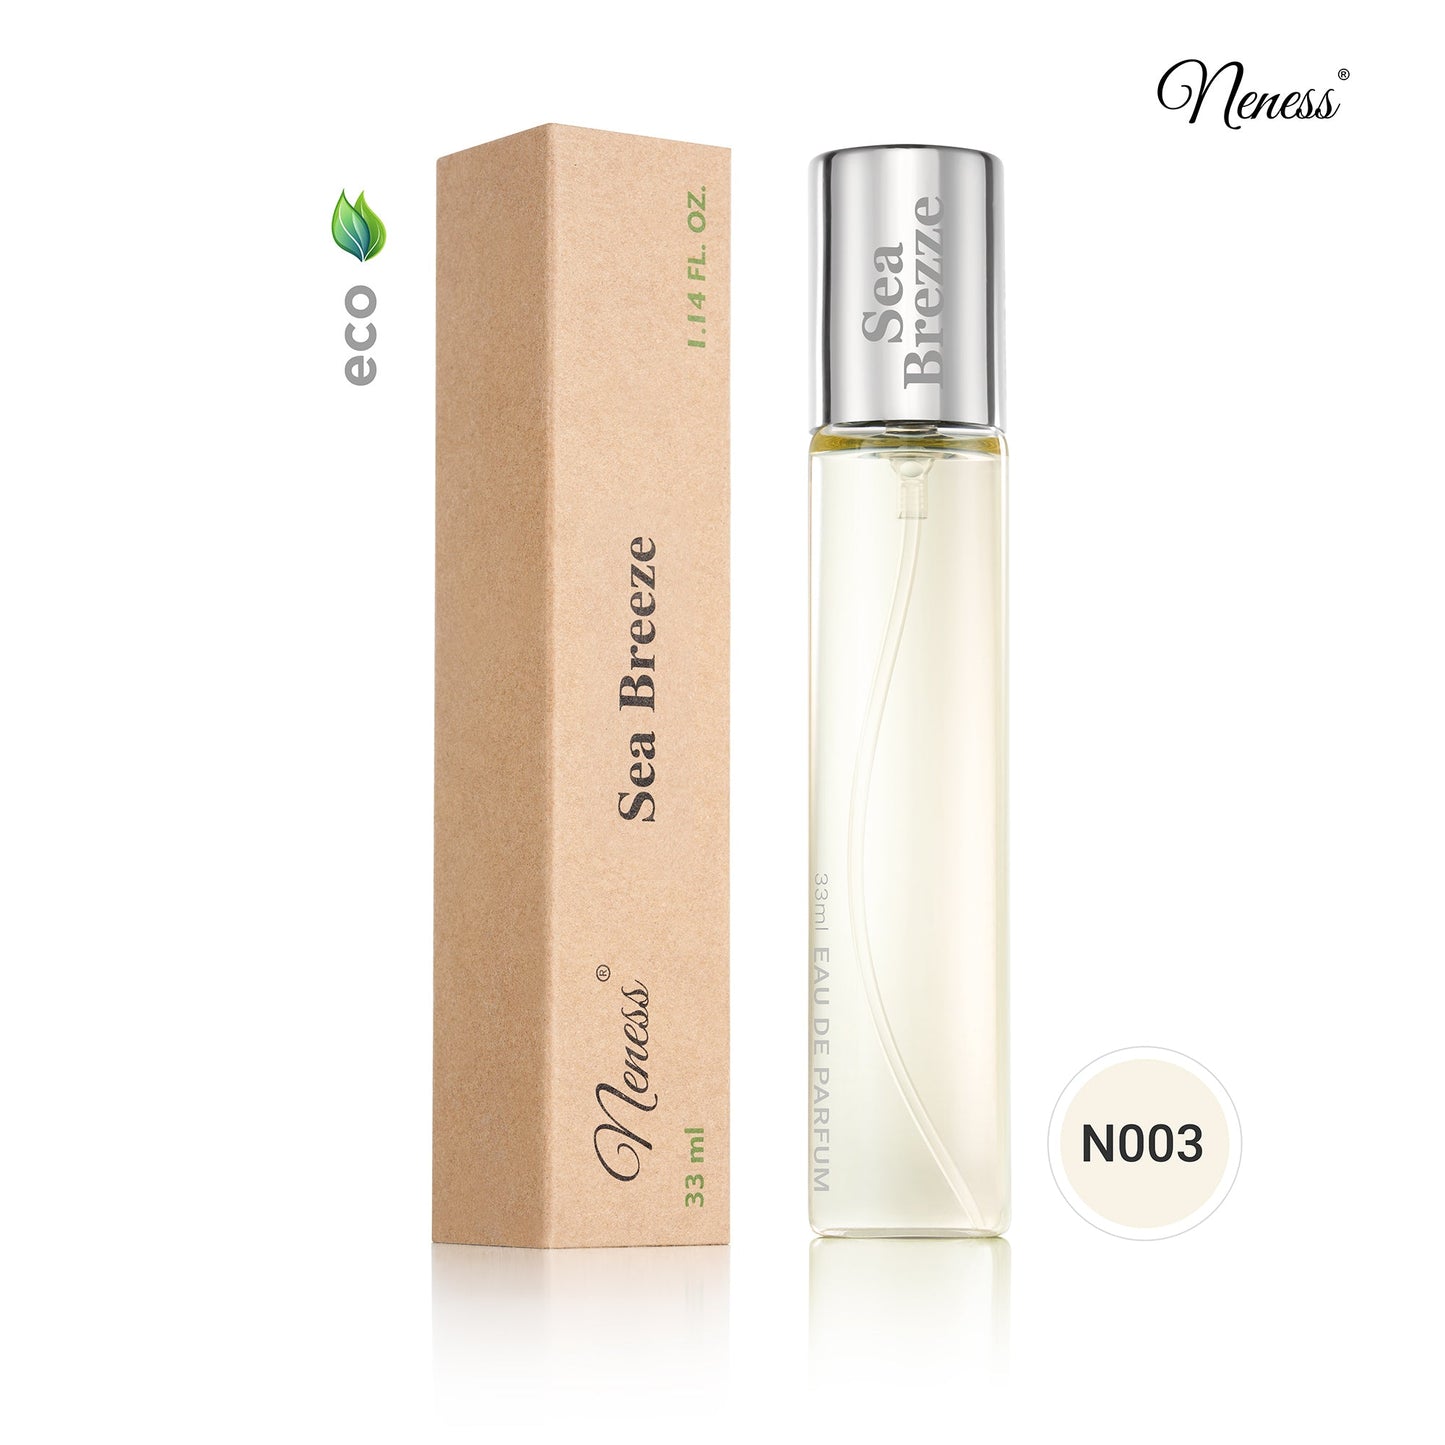 N003. Neness Sea Breeze - 33 ml - Parfums Pour Hommes